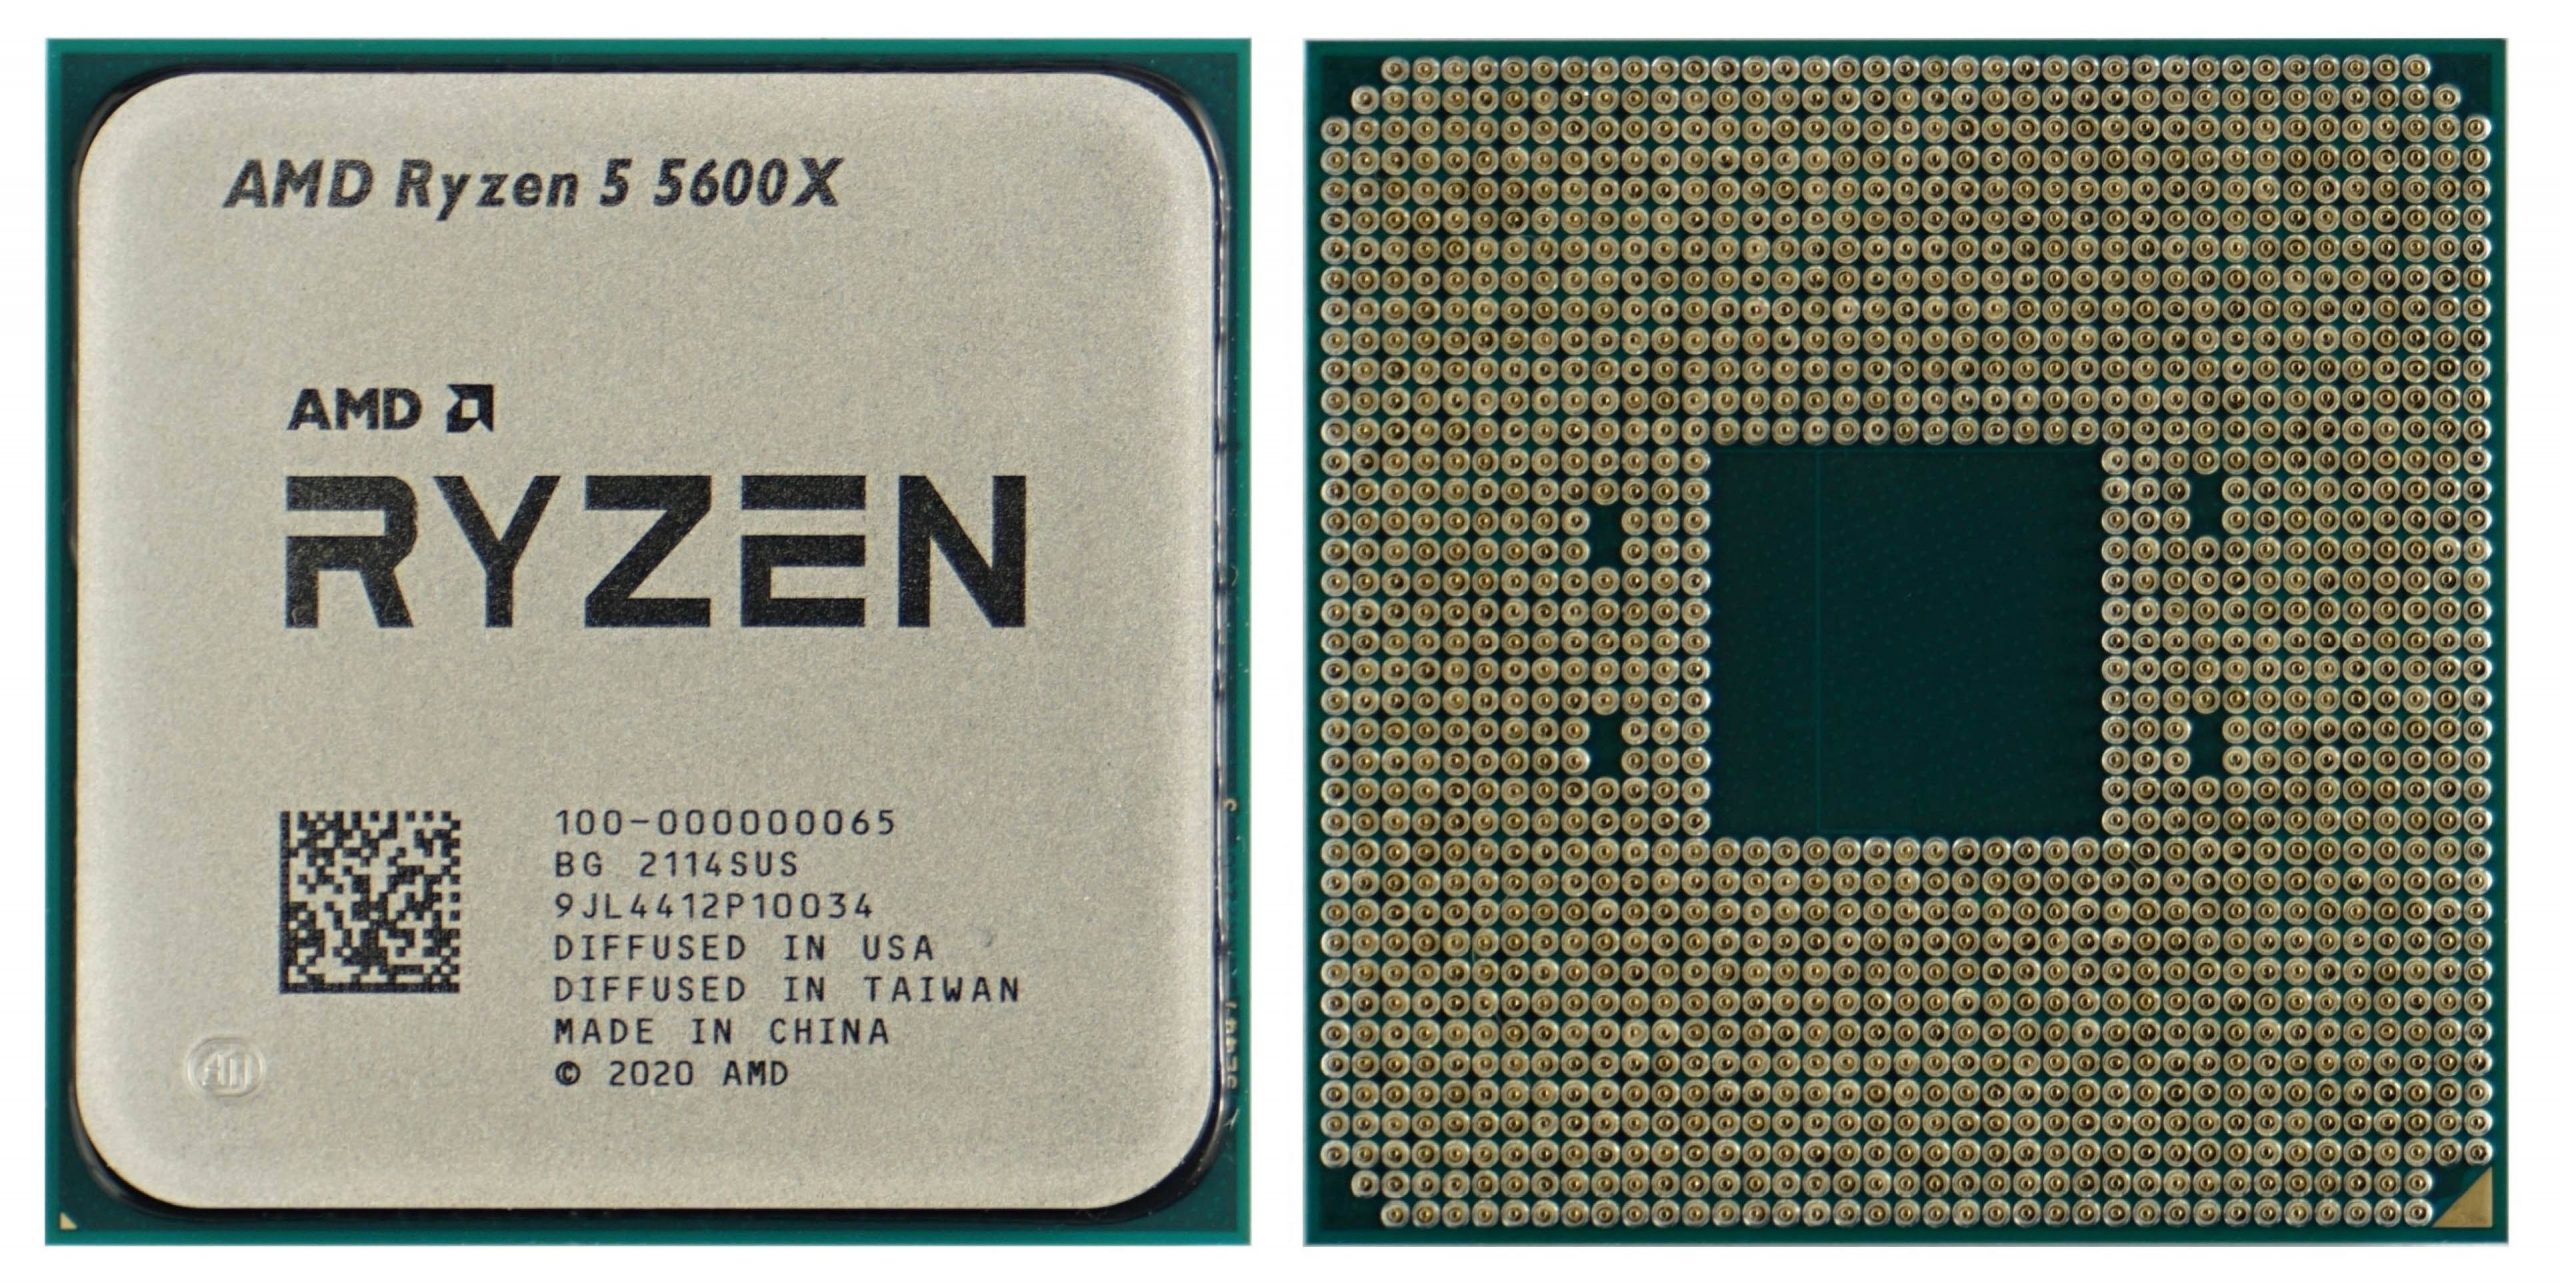 AMD ryzen 5 5600X CPU